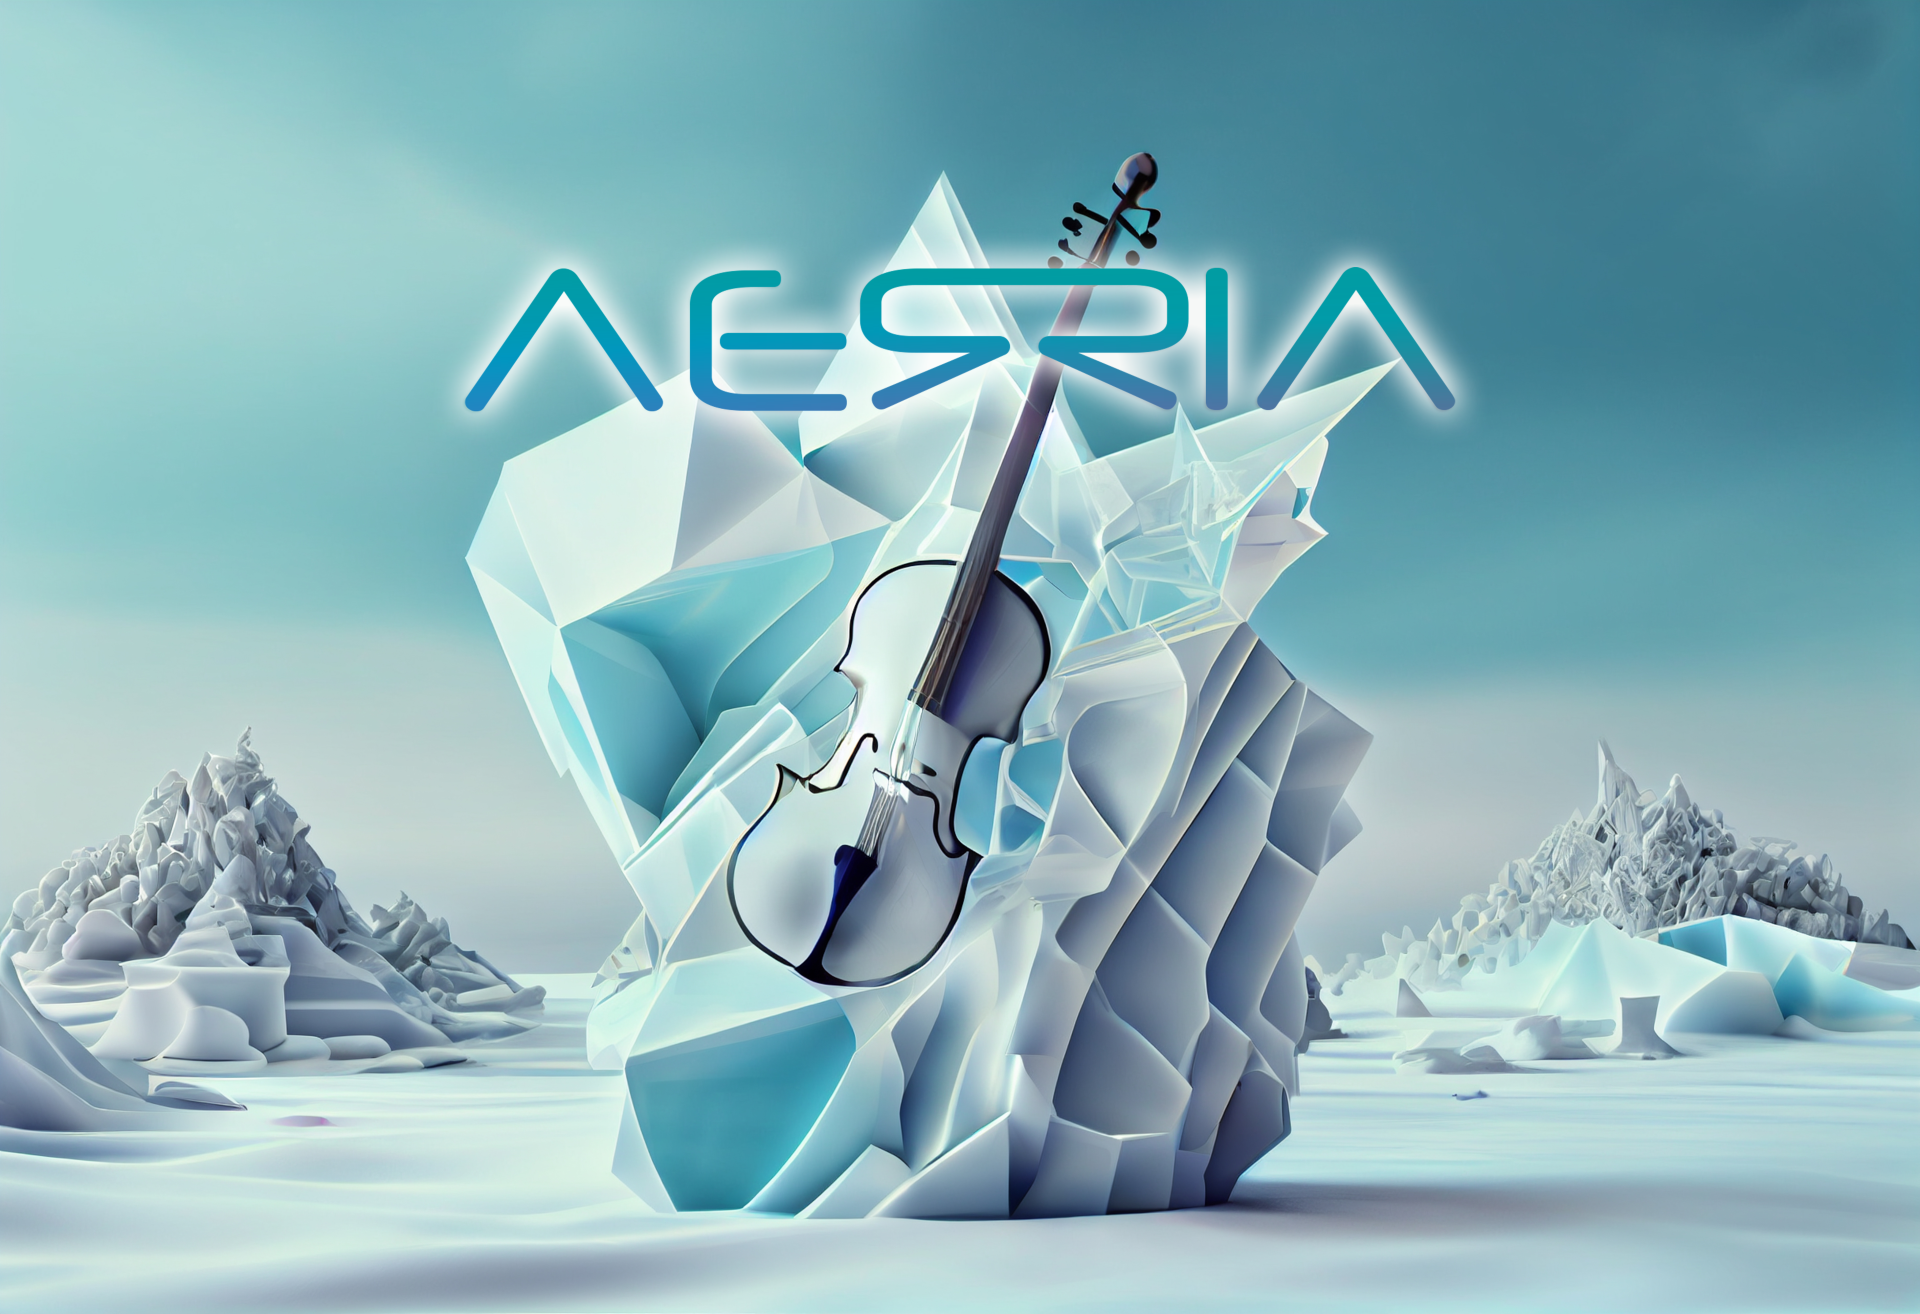 AERRIA Music